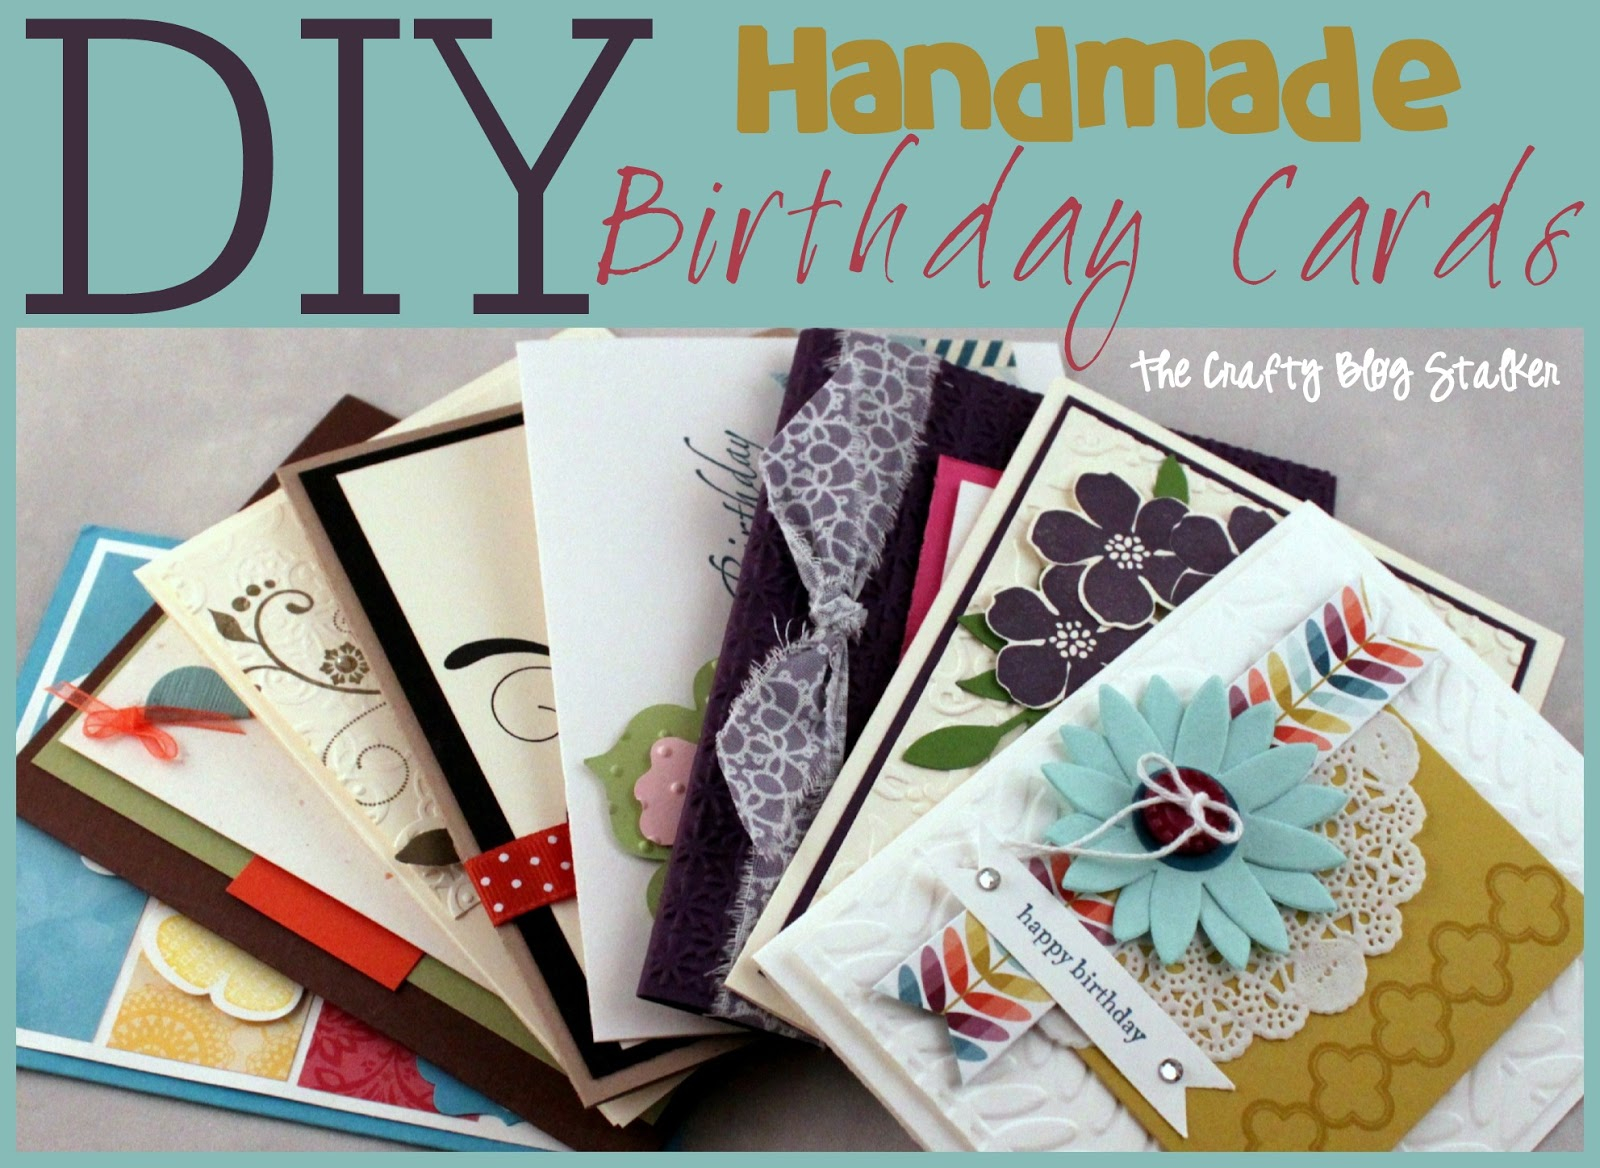 Creative Ideas For A Birthday Card Handmade Birthday Card Ideas The Crafty Blog Stalker